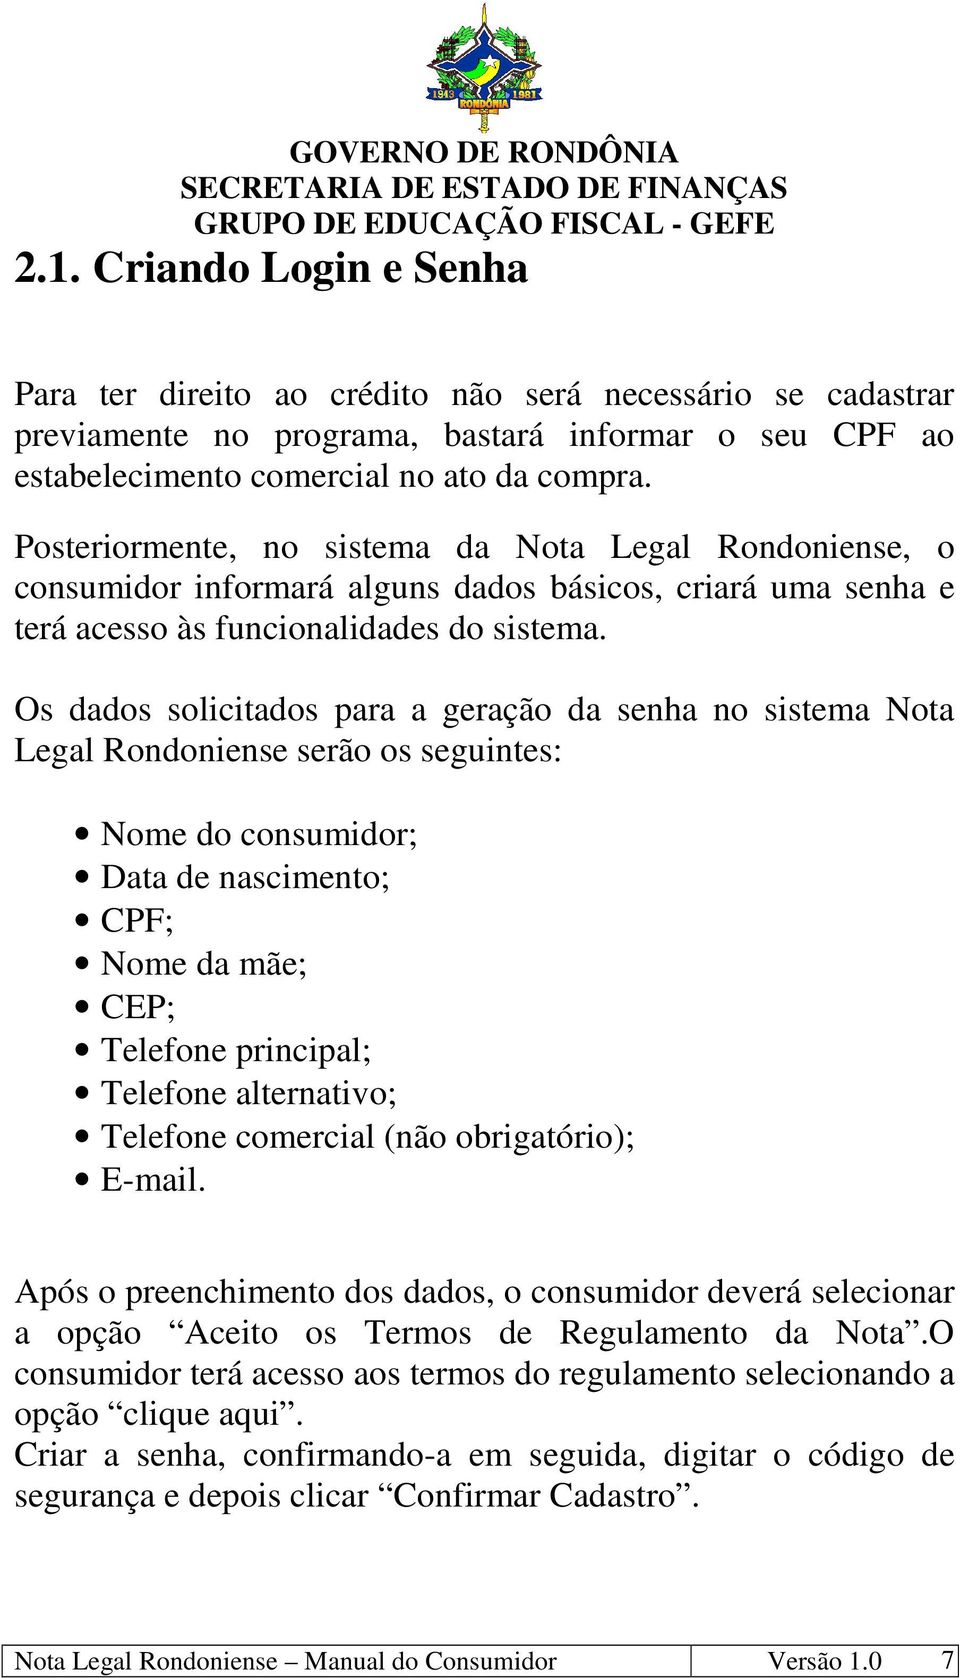 Os dados solicitados para a geração da senha no sistema Nota Legal Rondoniense serão os seguintes: Nome do consumidor; Data de nascimento; CPF; Nome da mãe; CEP; Telefone principal; Telefone